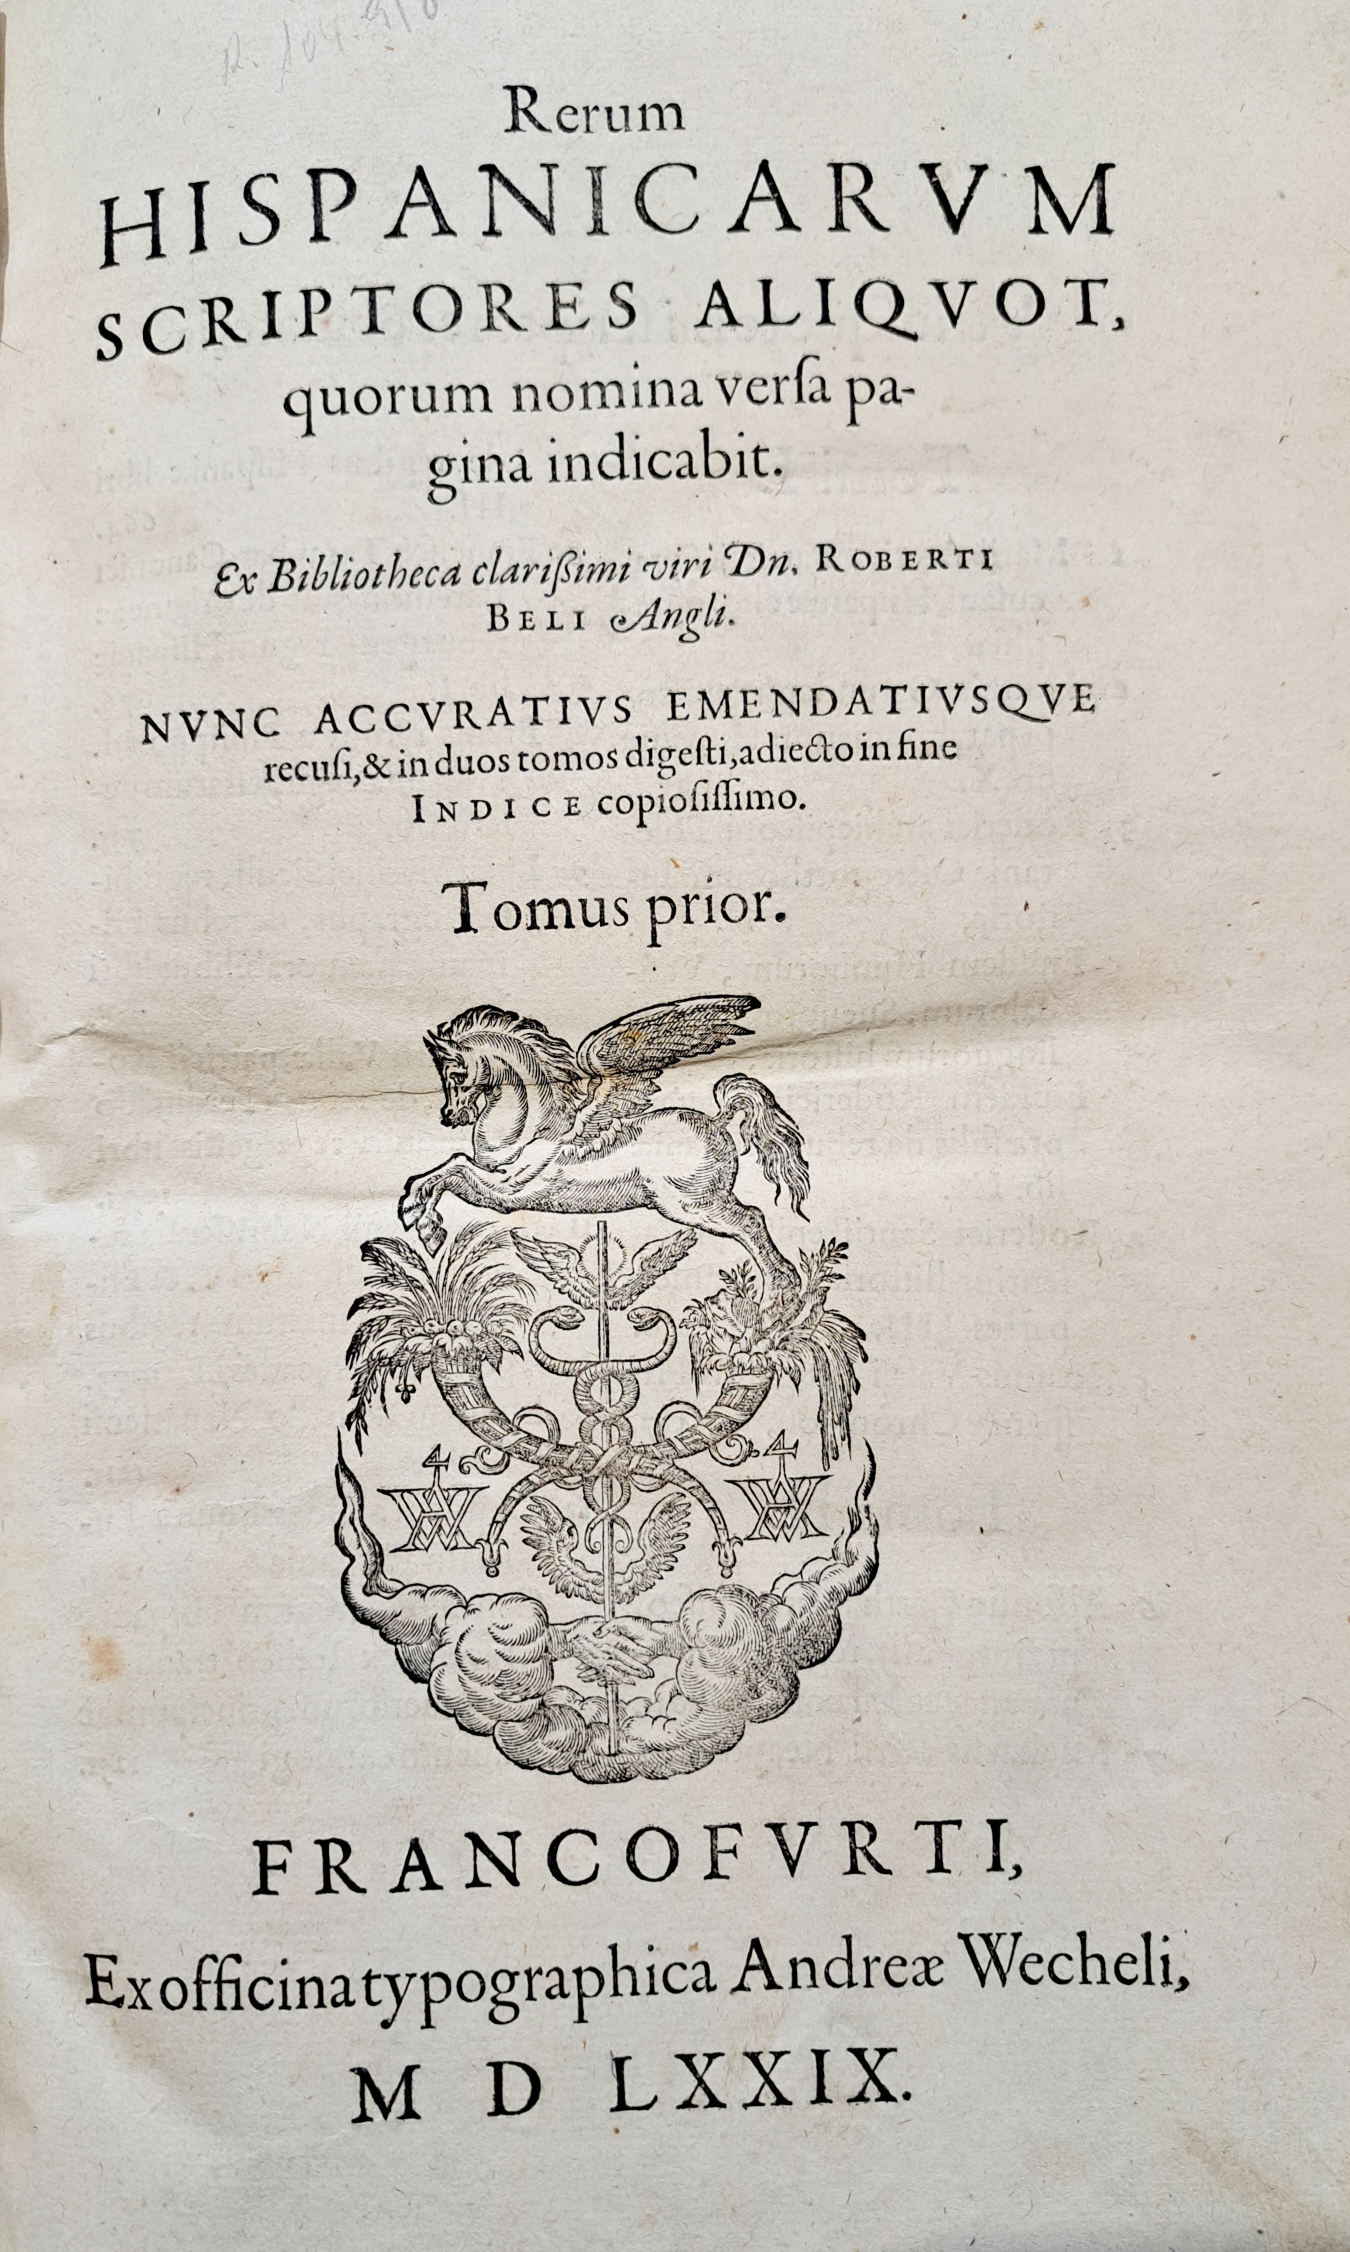 Rerum Hispanicarum scriptores aliquot, 1579